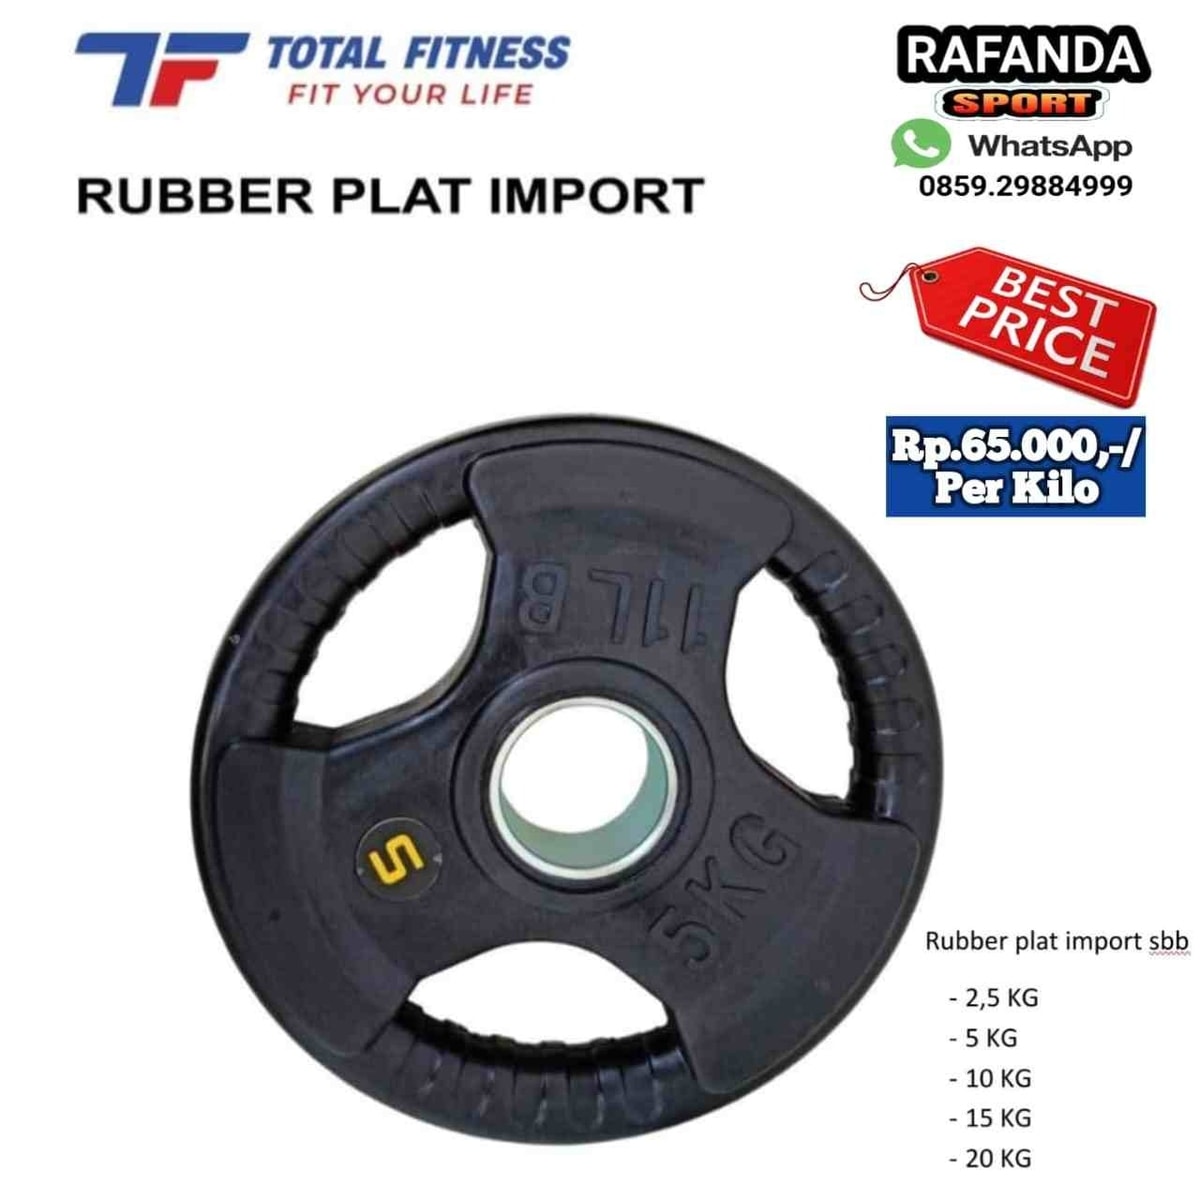 Rubber Plat Import